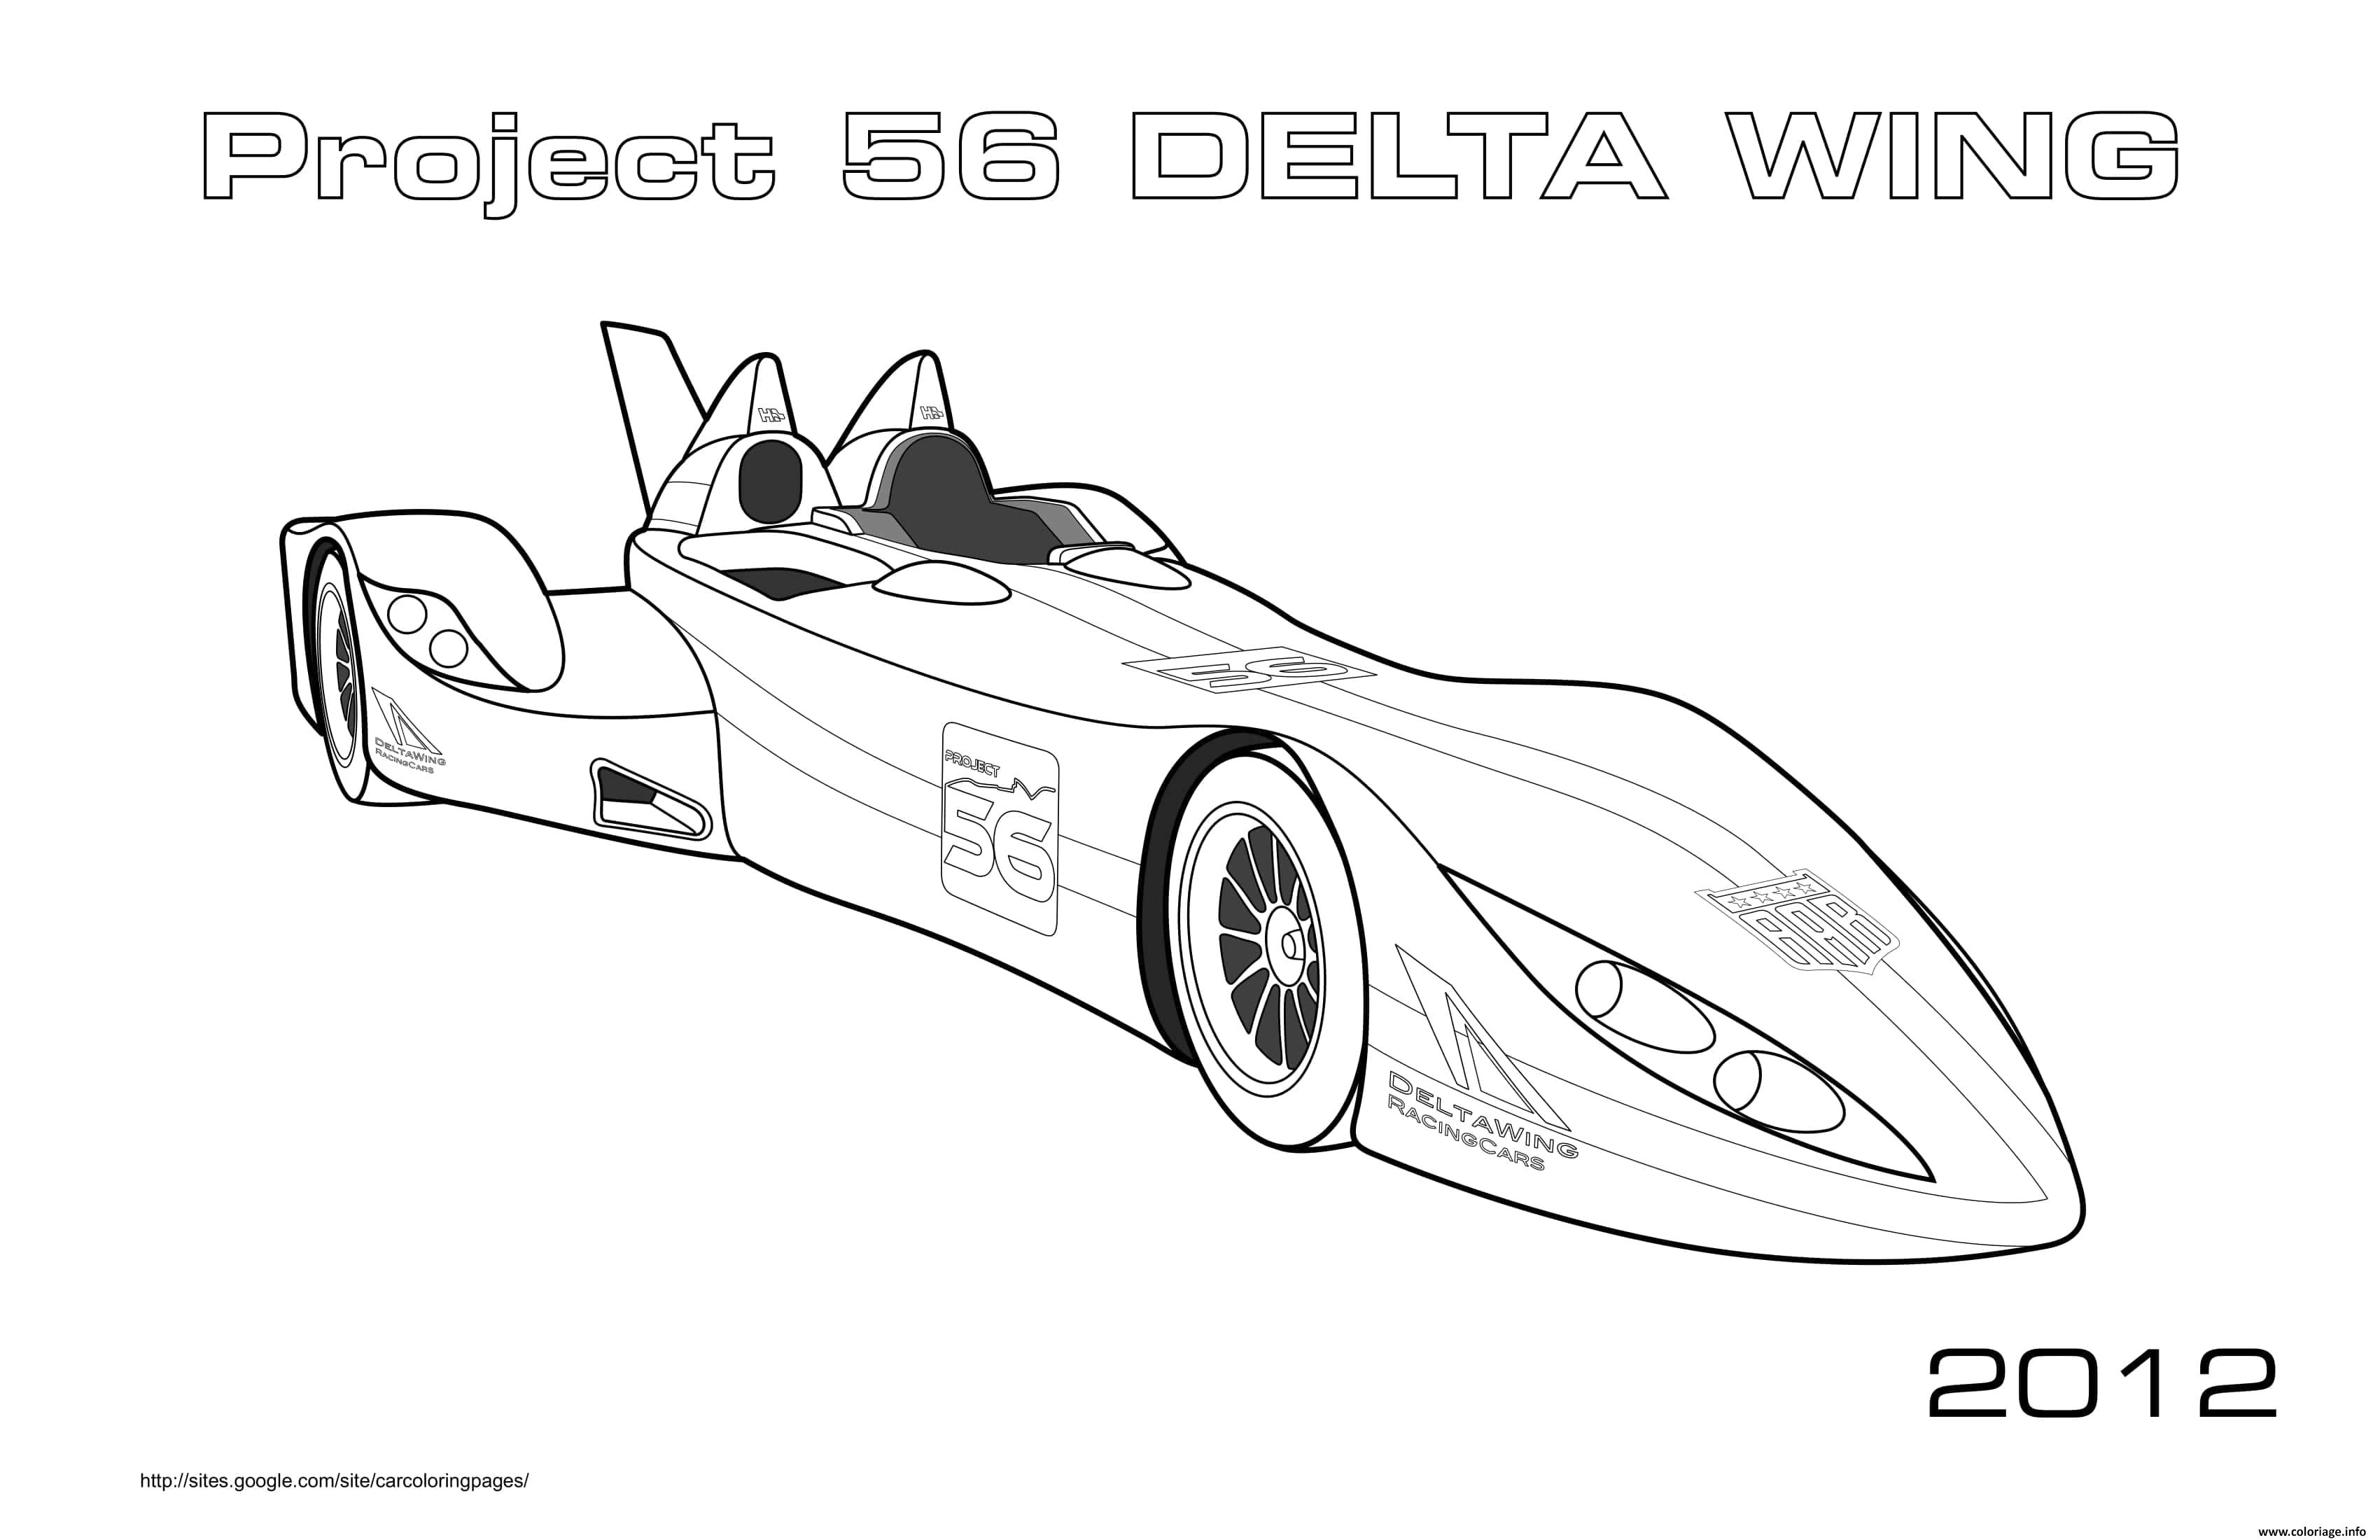 Dessin Project 56 Delta Wing 2012 Coloriage Gratuit à Imprimer